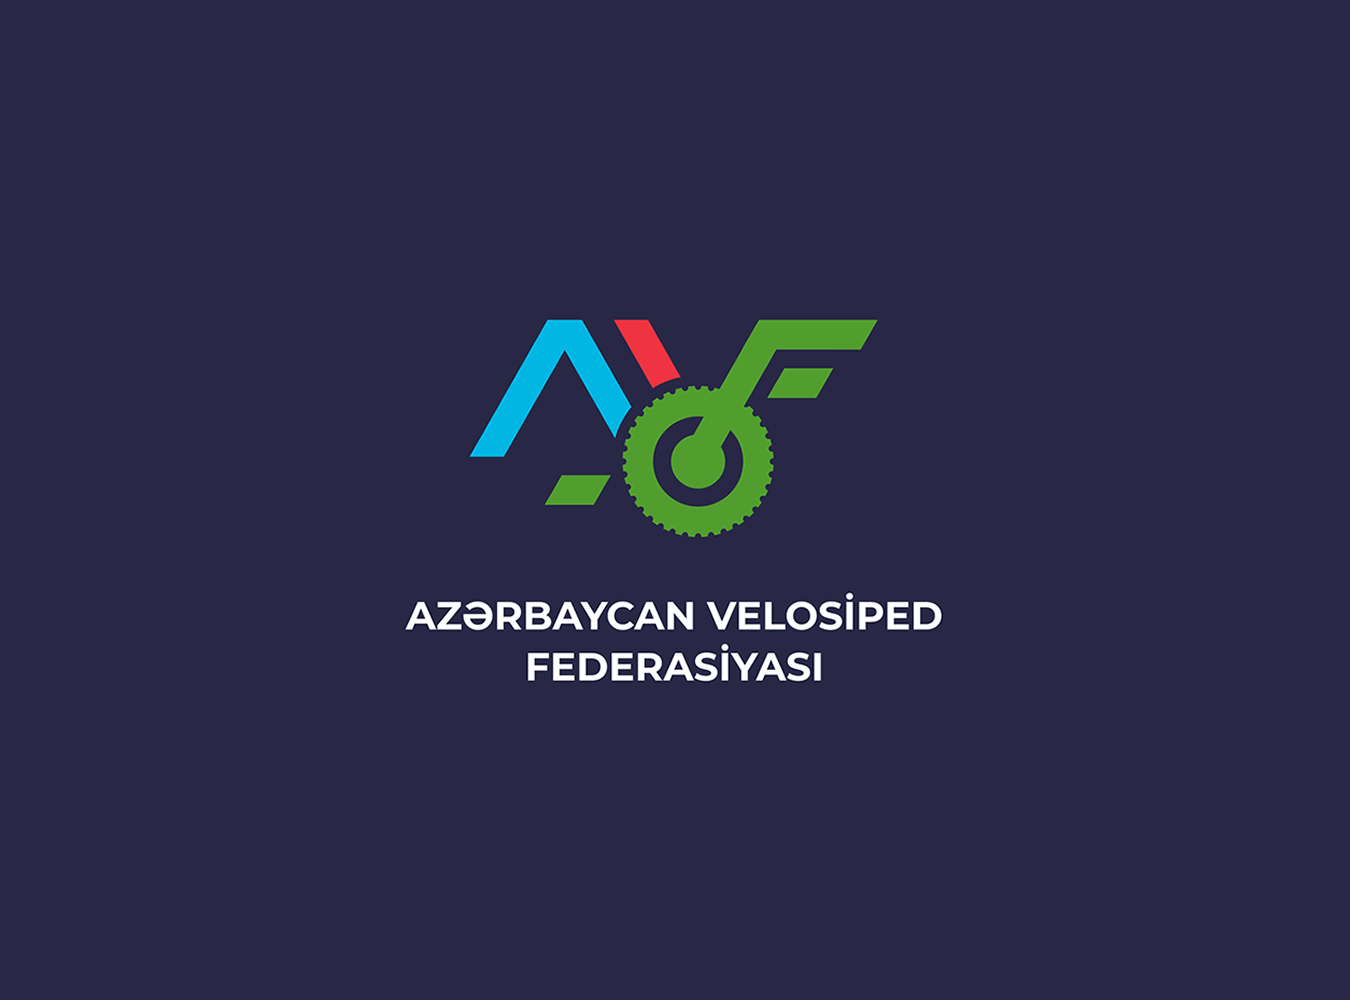 "Azərbaycan Velosiped Federasiyası” İctimai Birliyinin İntizam Qaydası